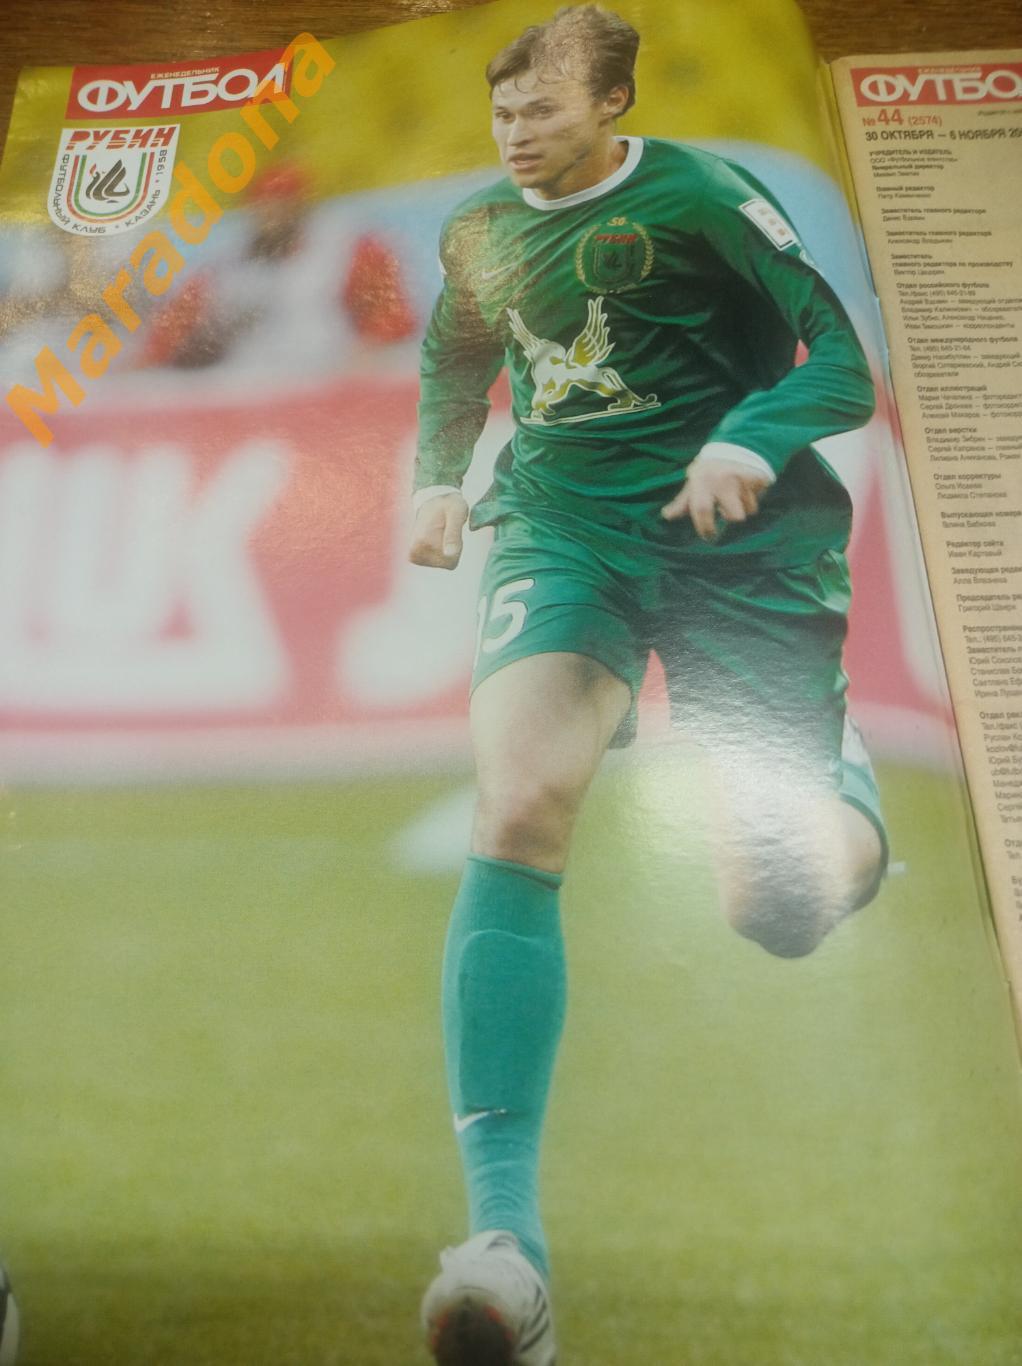 Еженедельник Футбол № 9 2009 постер Рязанцев + Милевский 2